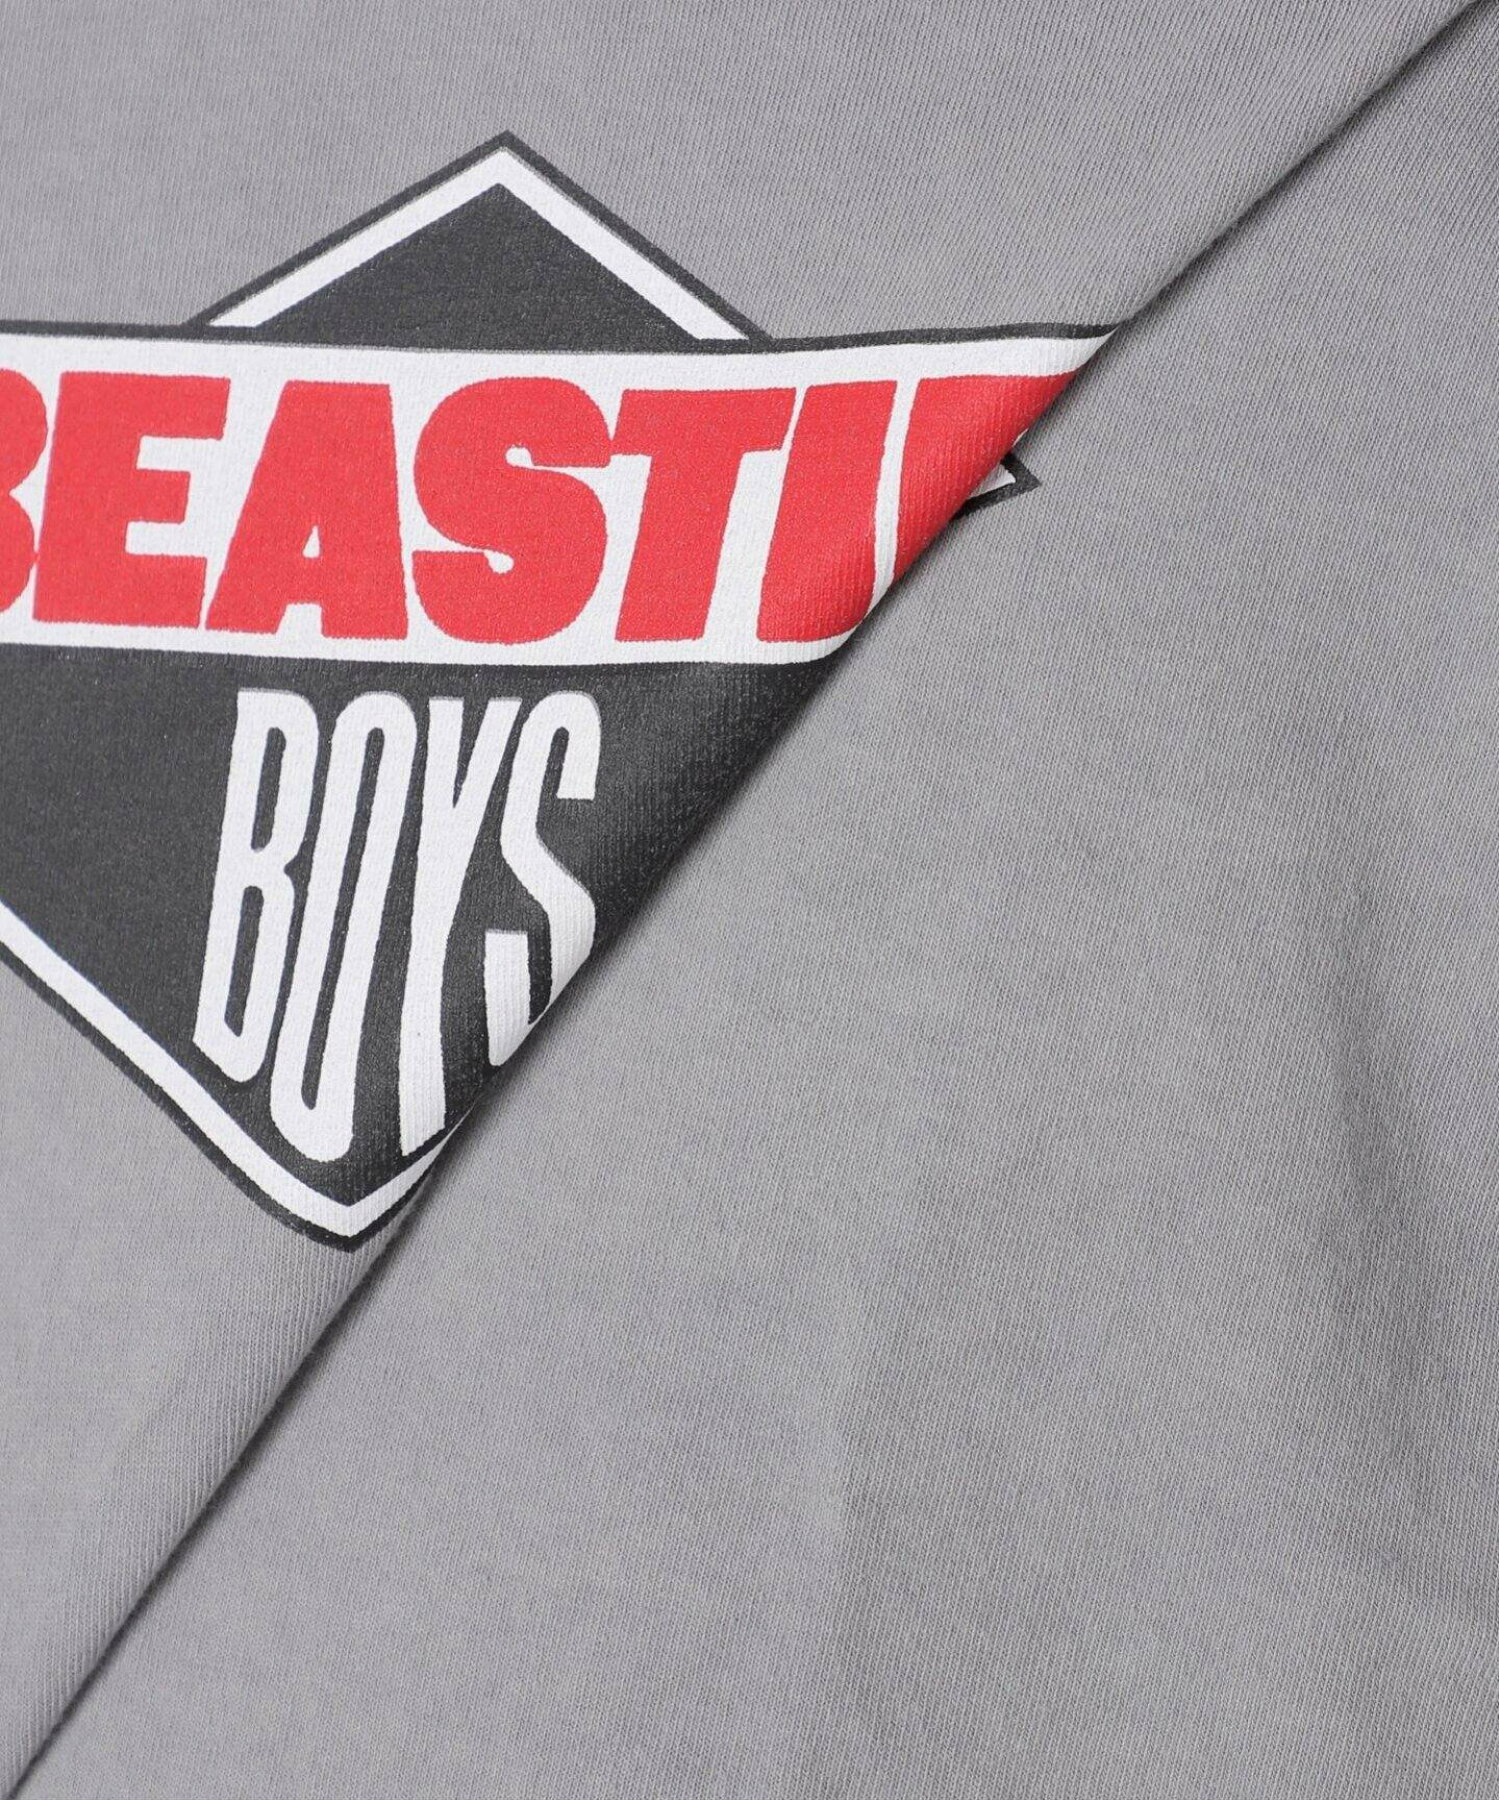 【BEASTIE BOYS / ビースティ・ボーイズ】 別注 L/S Tシャツ